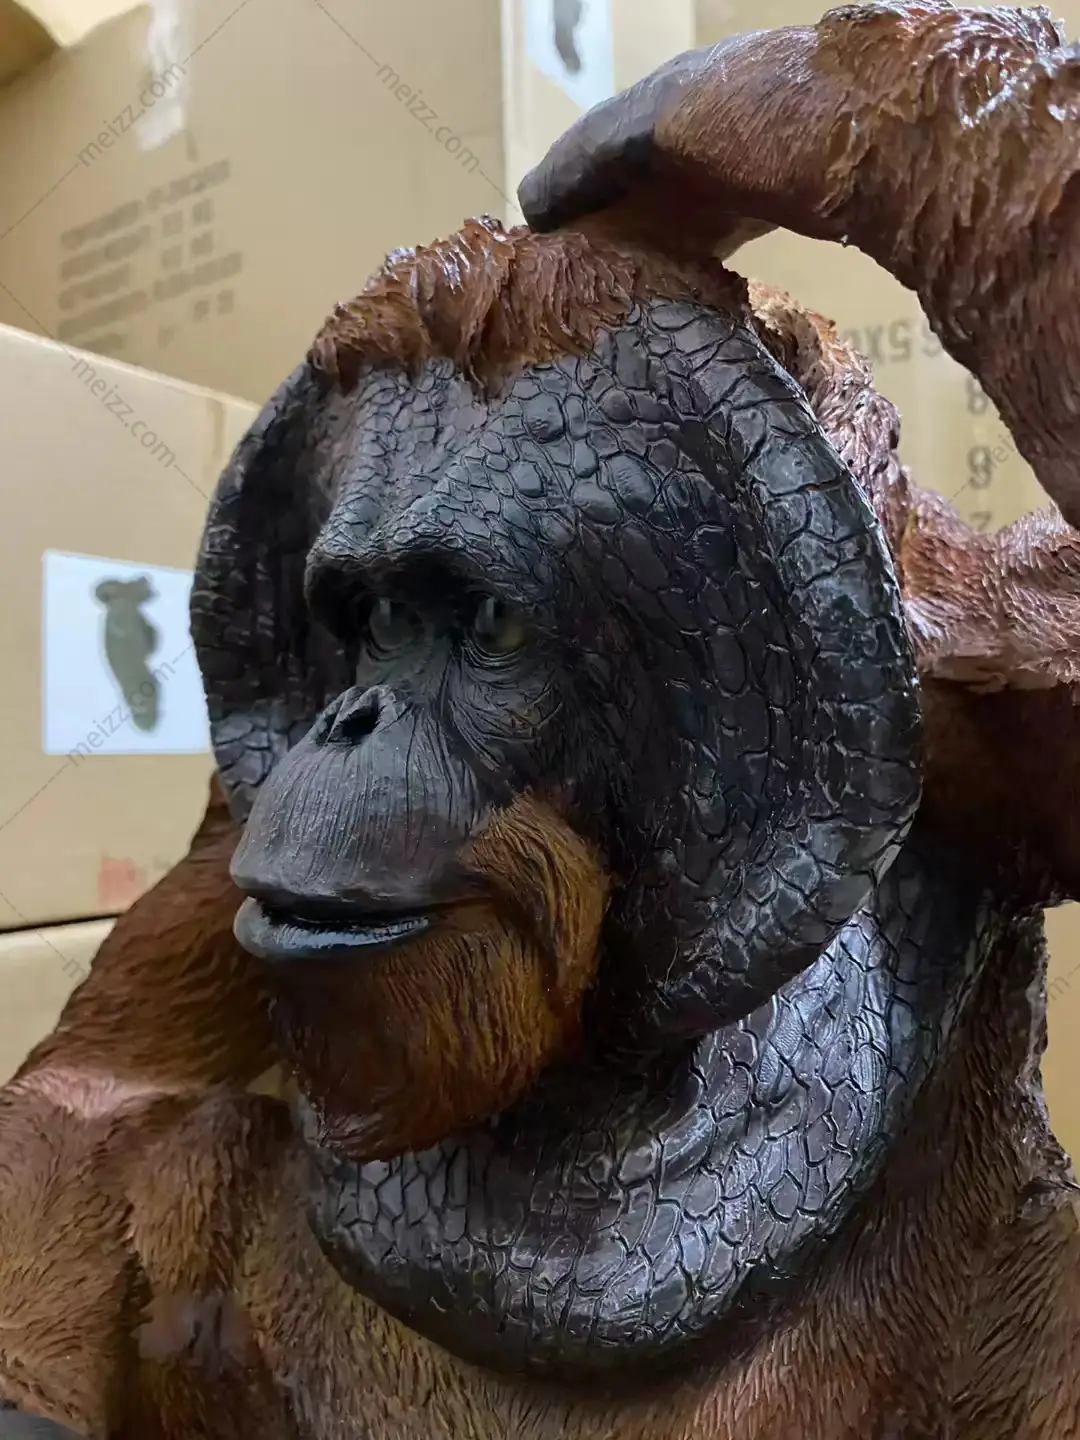 orangutan garden statue